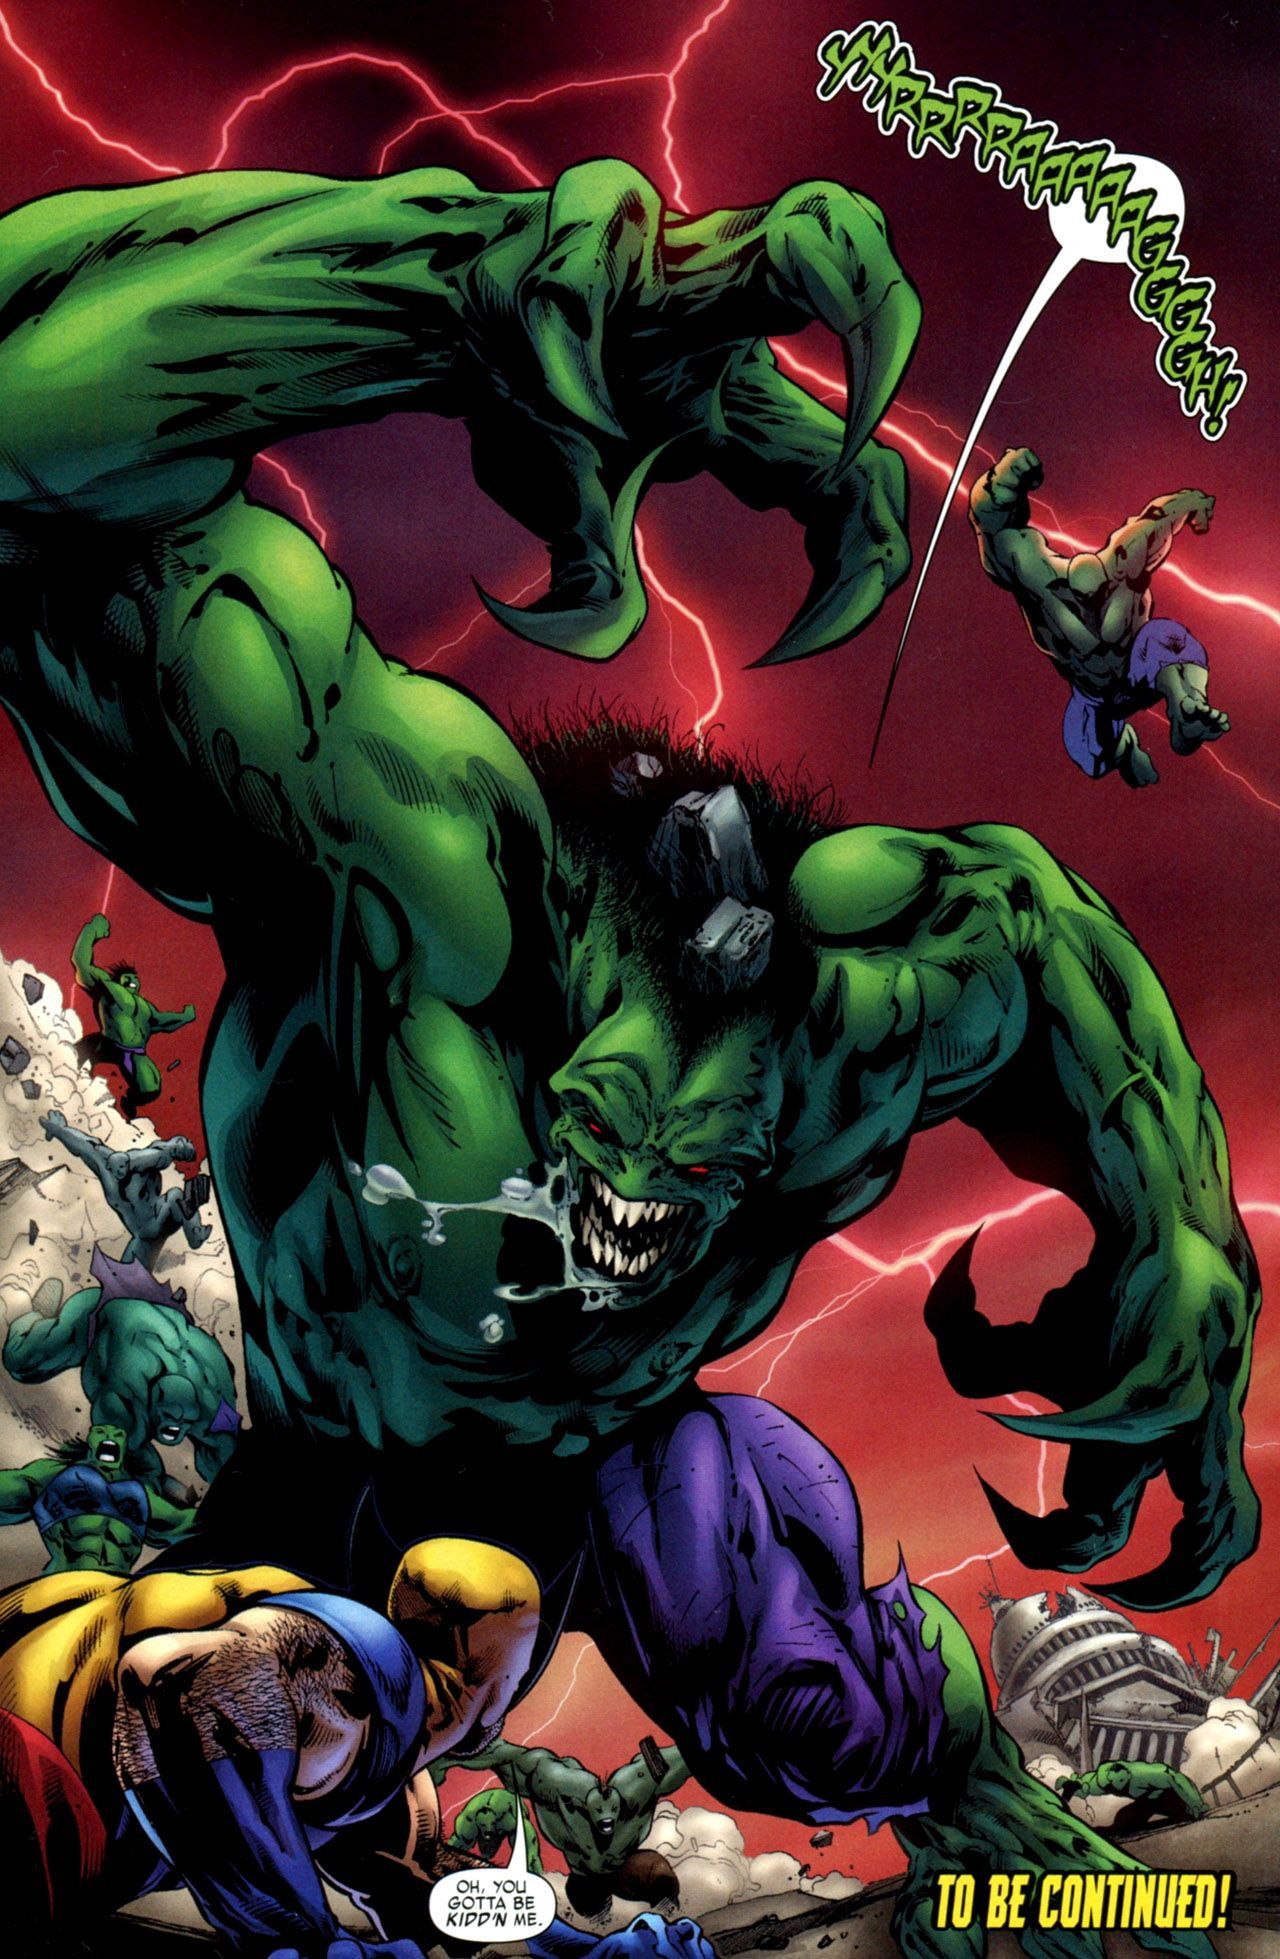 Marvel Heroes Hulk 2099